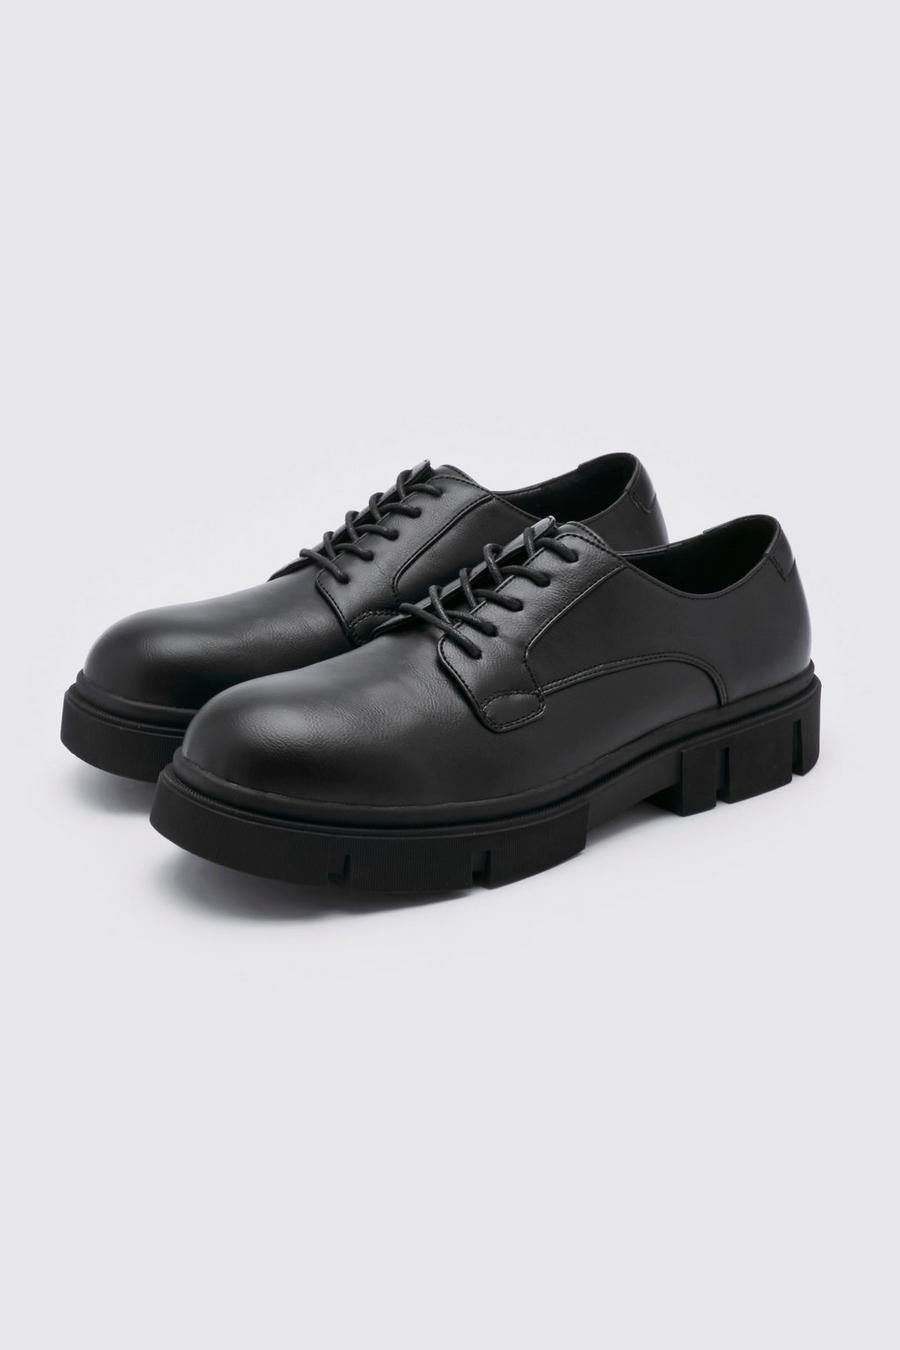 Geschnürte Schuhe mit dicker Sohle, Black schwarz